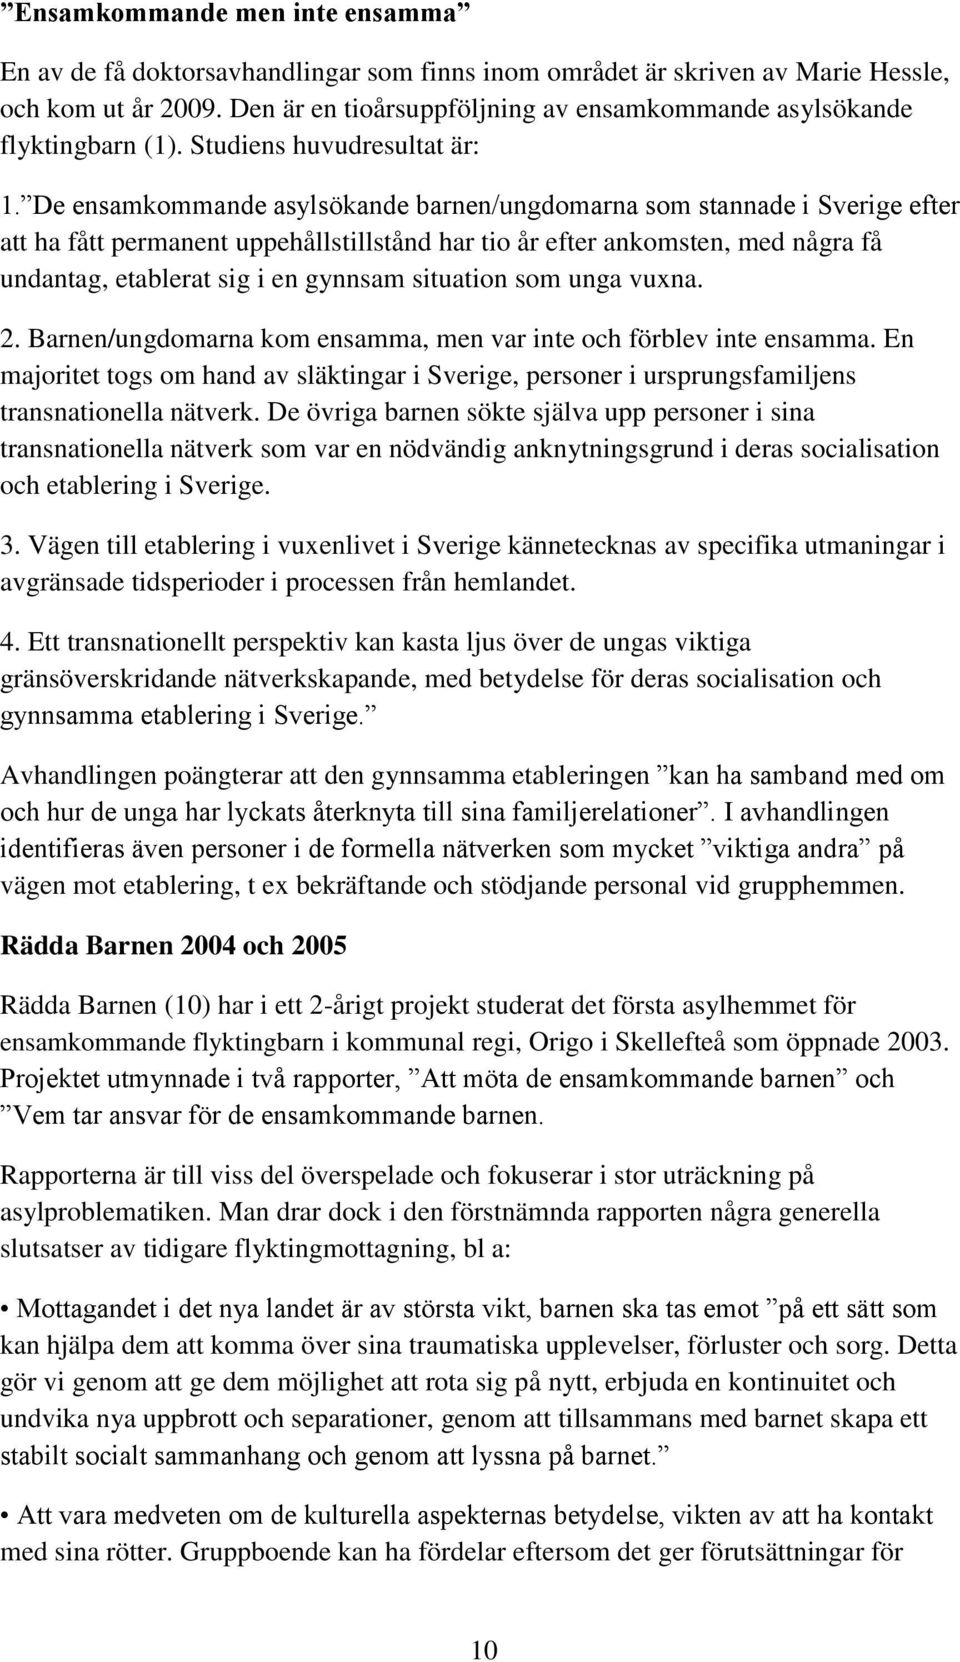 De ensamkommande asylsökande barnen/ungdomarna som stannade i Sverige efter att ha fått permanent uppehållstillstånd har tio år efter ankomsten, med några få undantag, etablerat sig i en gynnsam